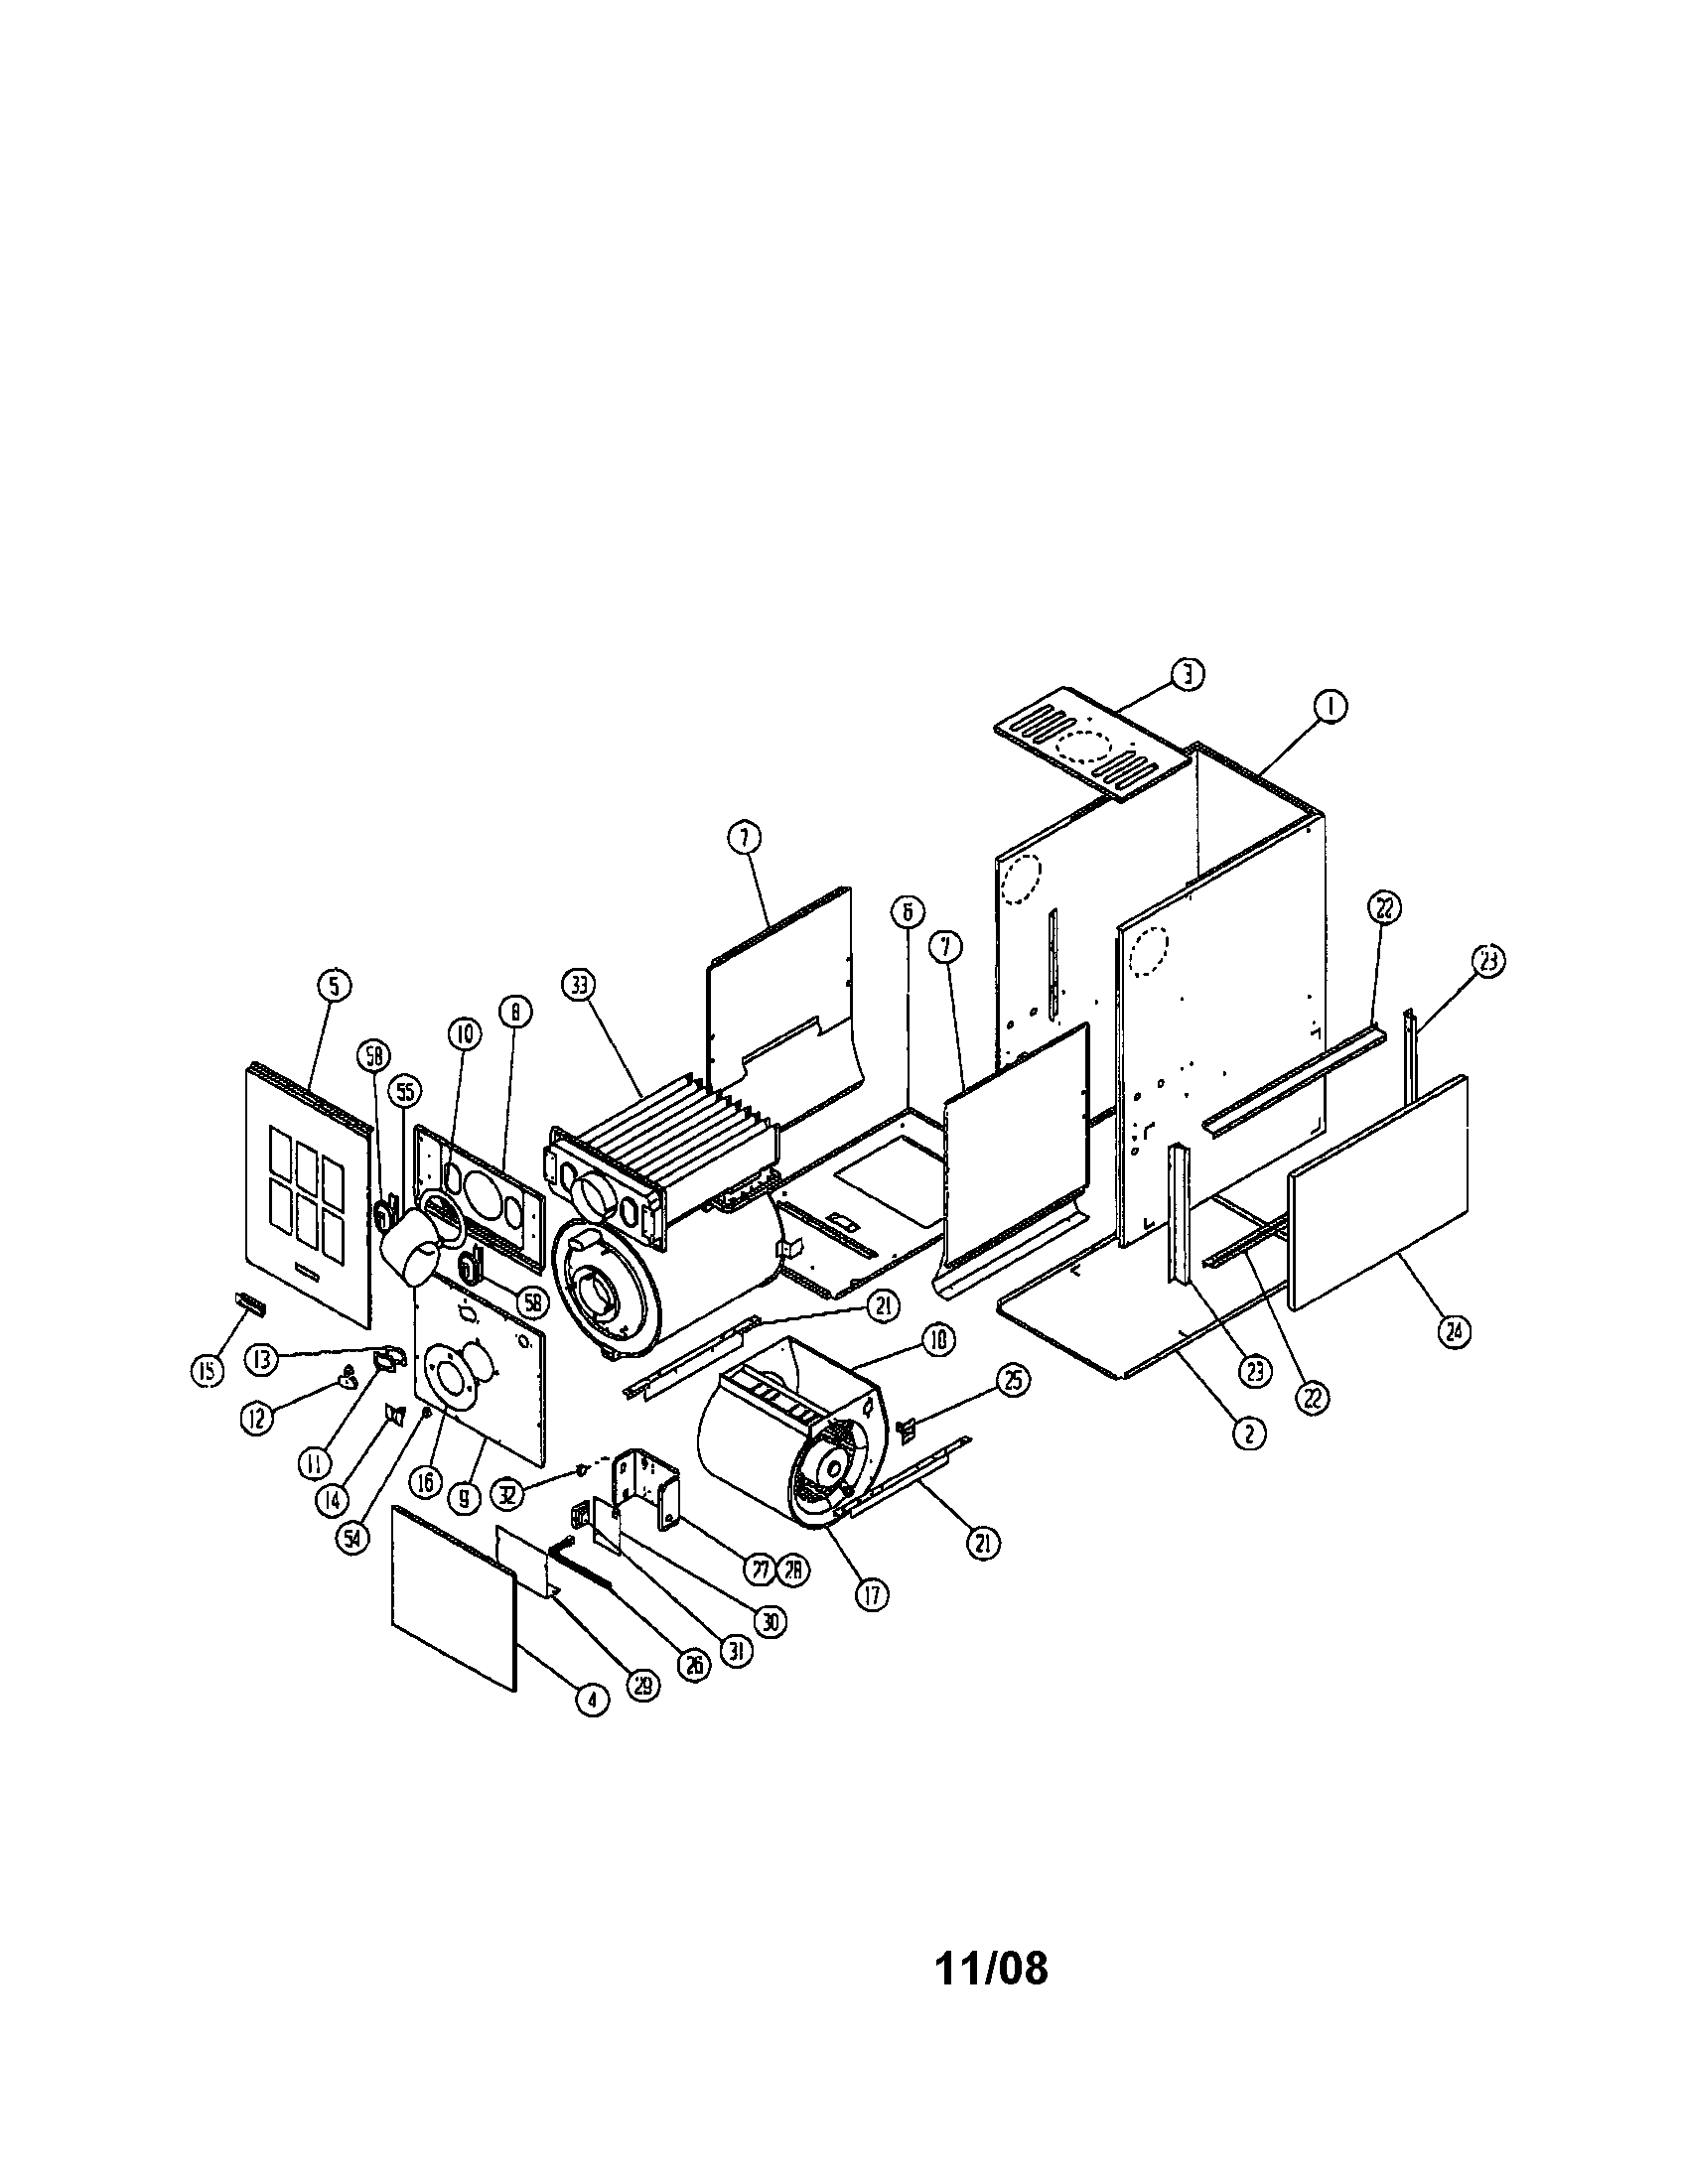 Ducane Furnace Parts Diagram - General Wiring Diagram